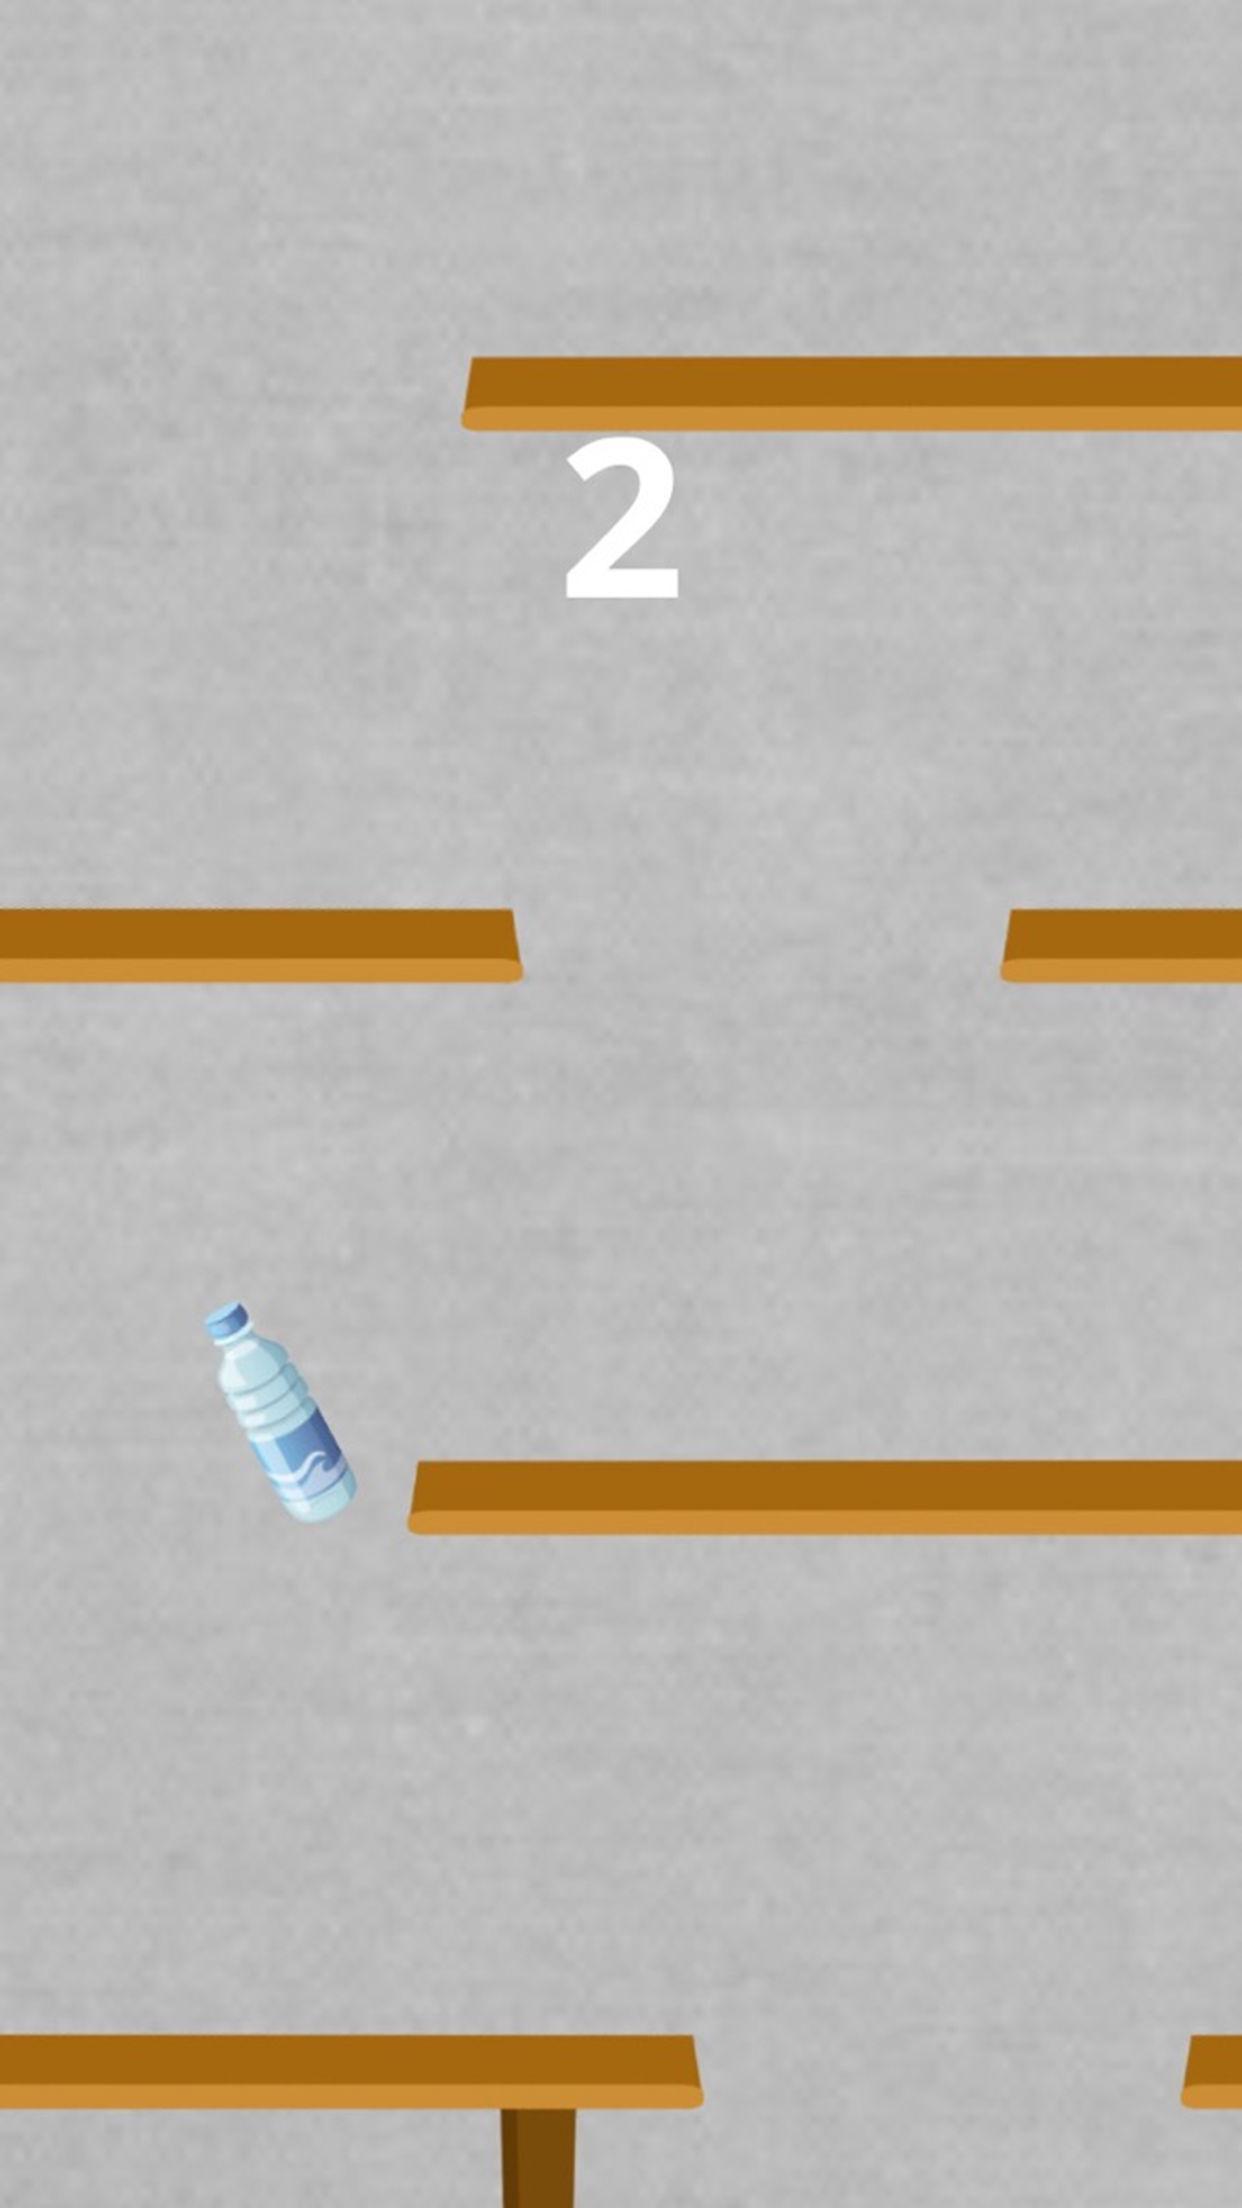 Bottle Flipper - Flippy 2K17 screenshot game